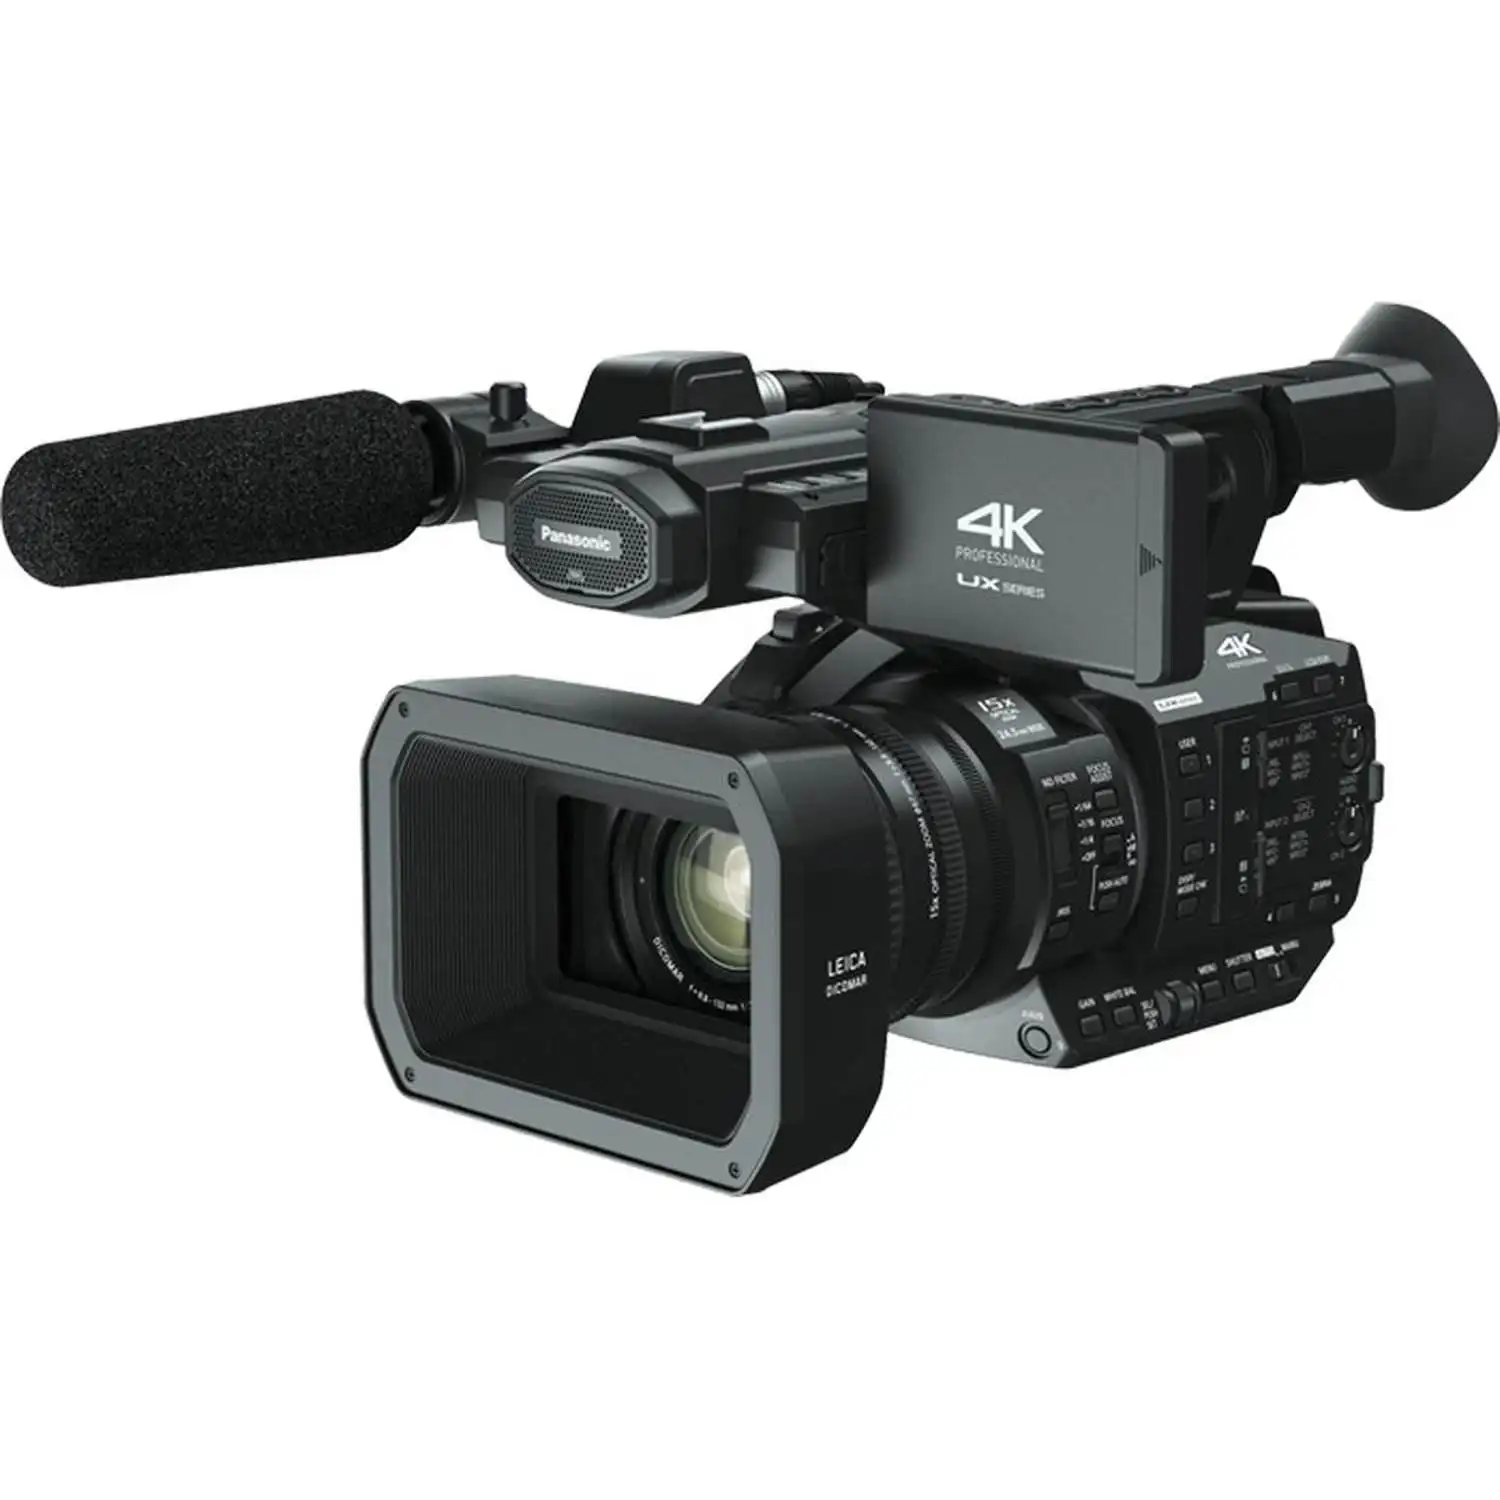 पैनासोनिक AG-UX90 4K प्रोफेशनल वीडियो कैमकॉर्डर ब्लैक के लिए हॉट